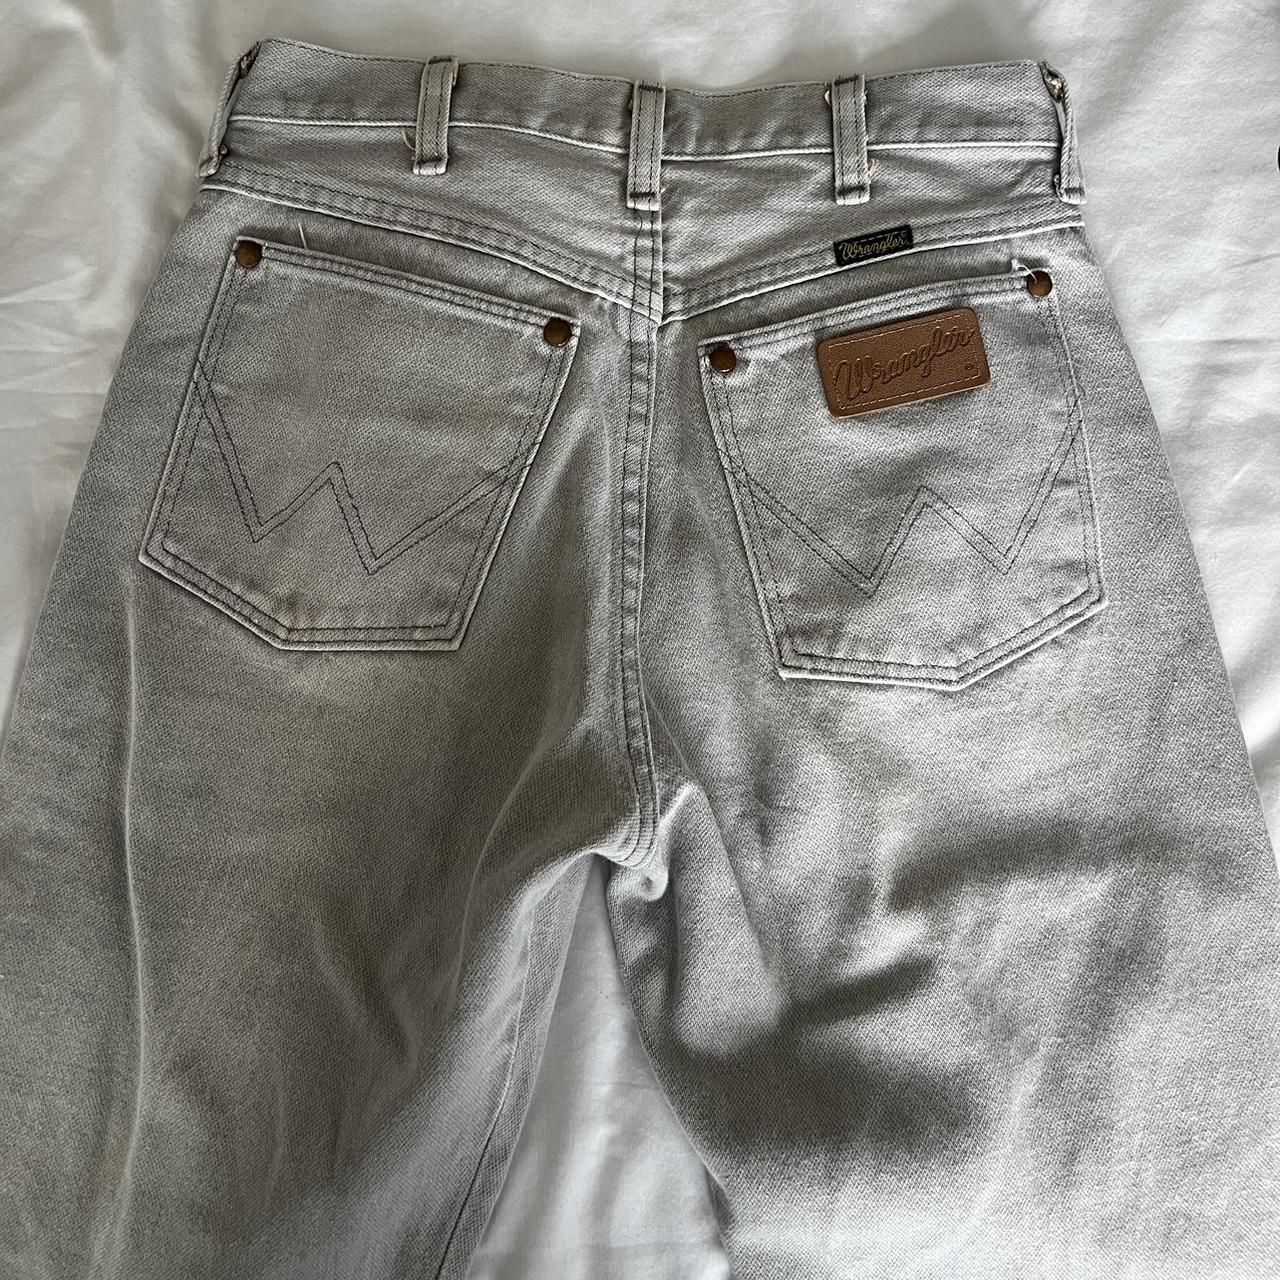 Wrangler Gray Jeans - never worn before - Depop